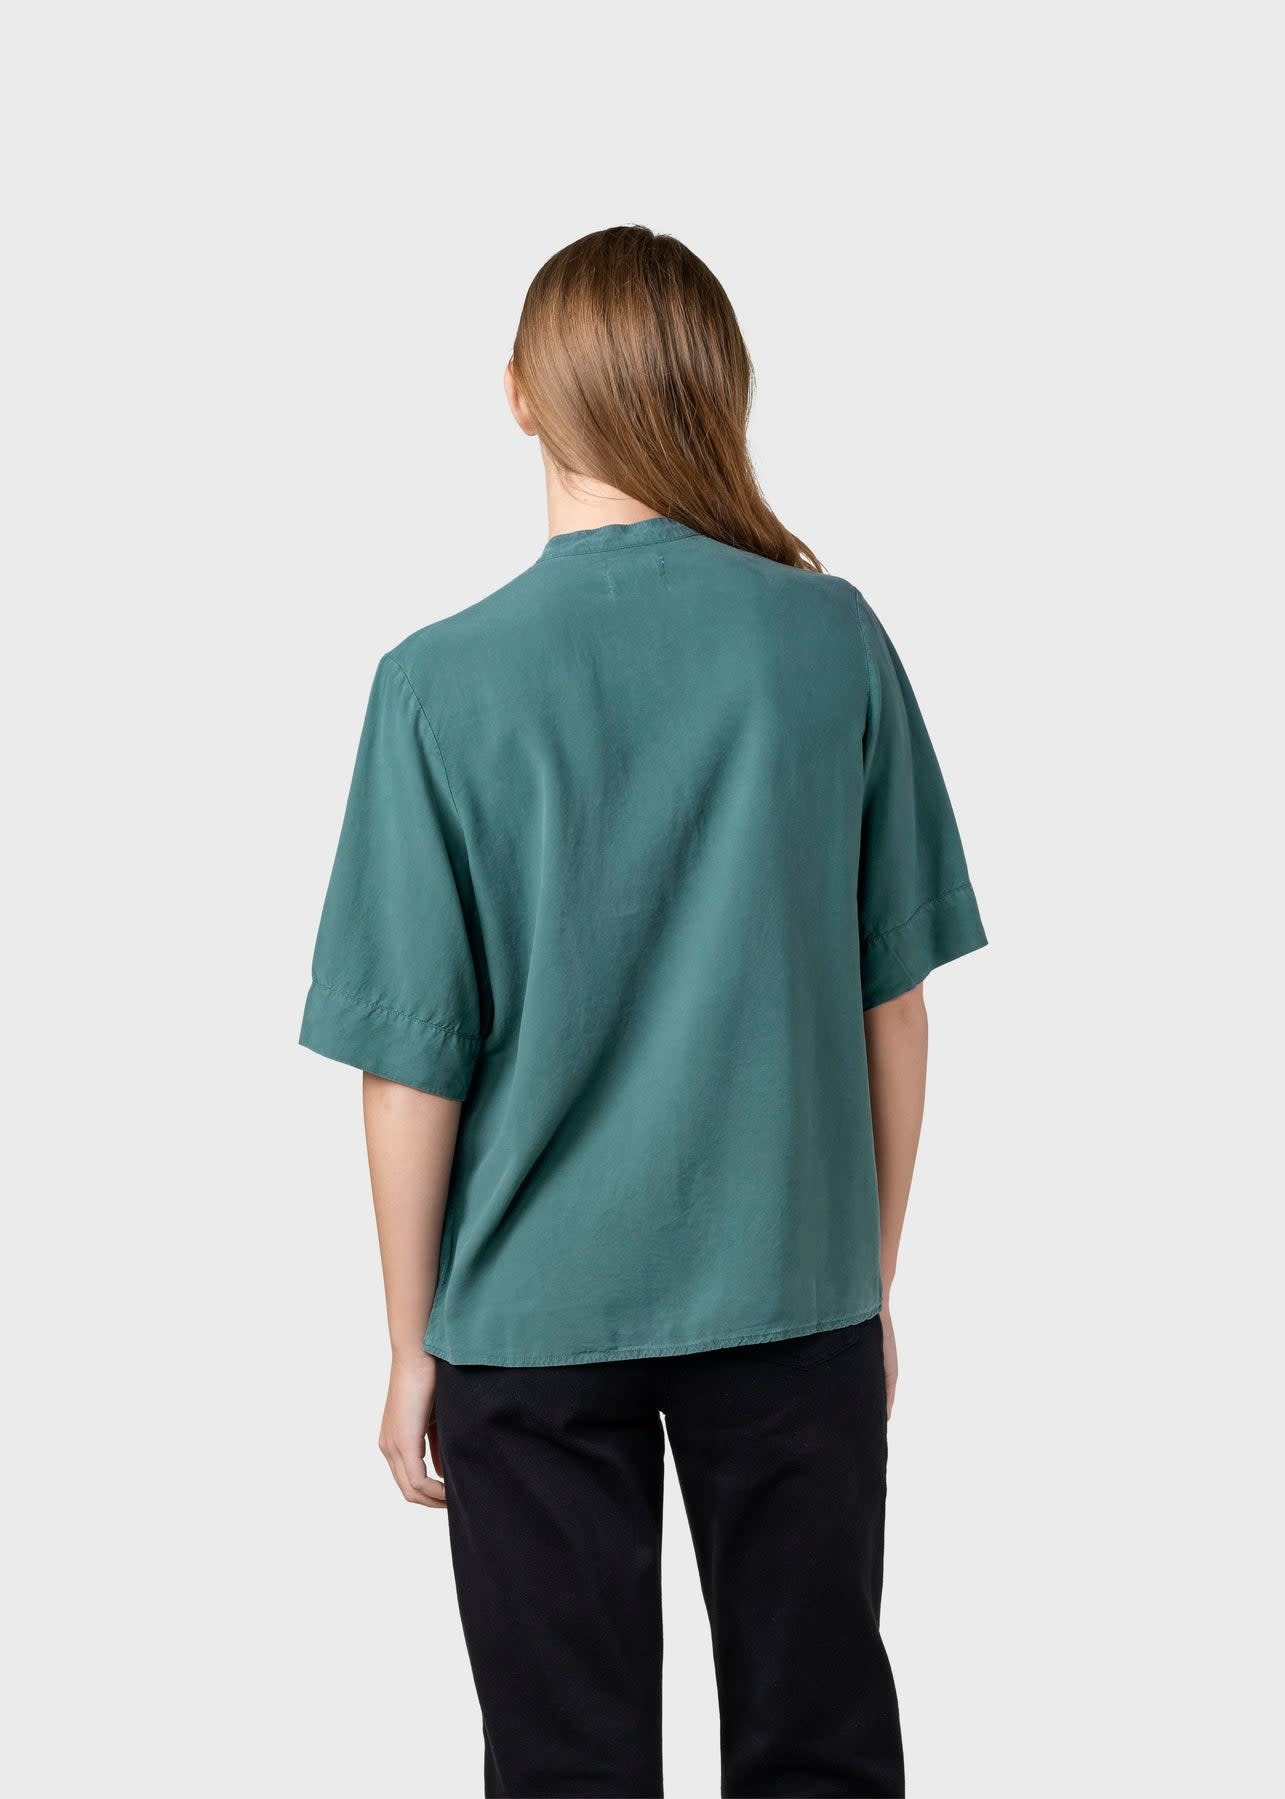 Klitmøller Klitmøller, Solrun Shirt, moss green, S